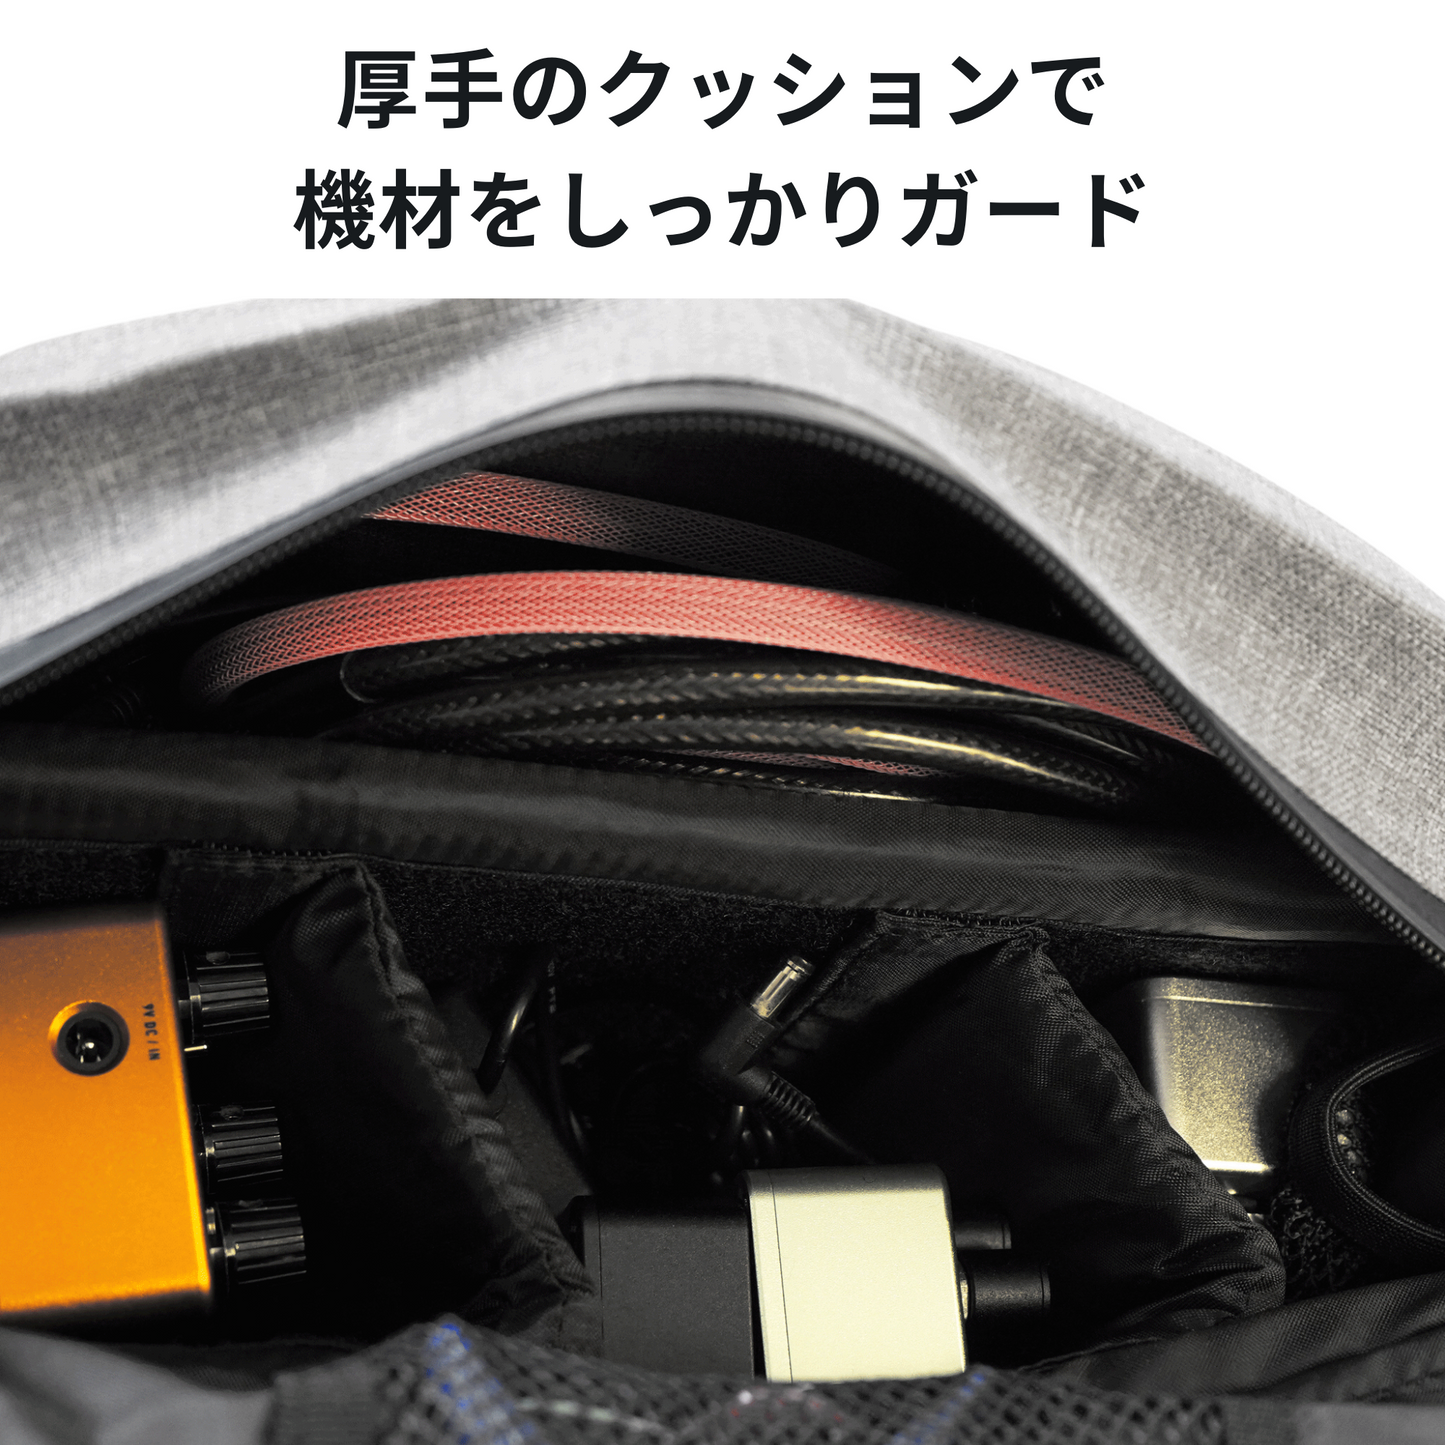 【期間限定10%OFF!】One Control Waterproof Sling Tail Bag Black